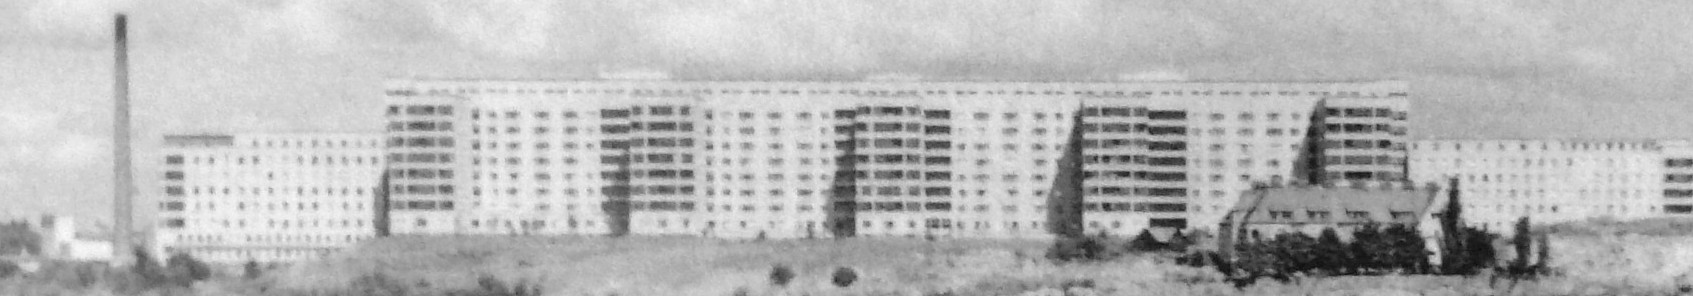 O hospital de Södermalm, Estocolmo (Södersjukhuset), em 1951. 